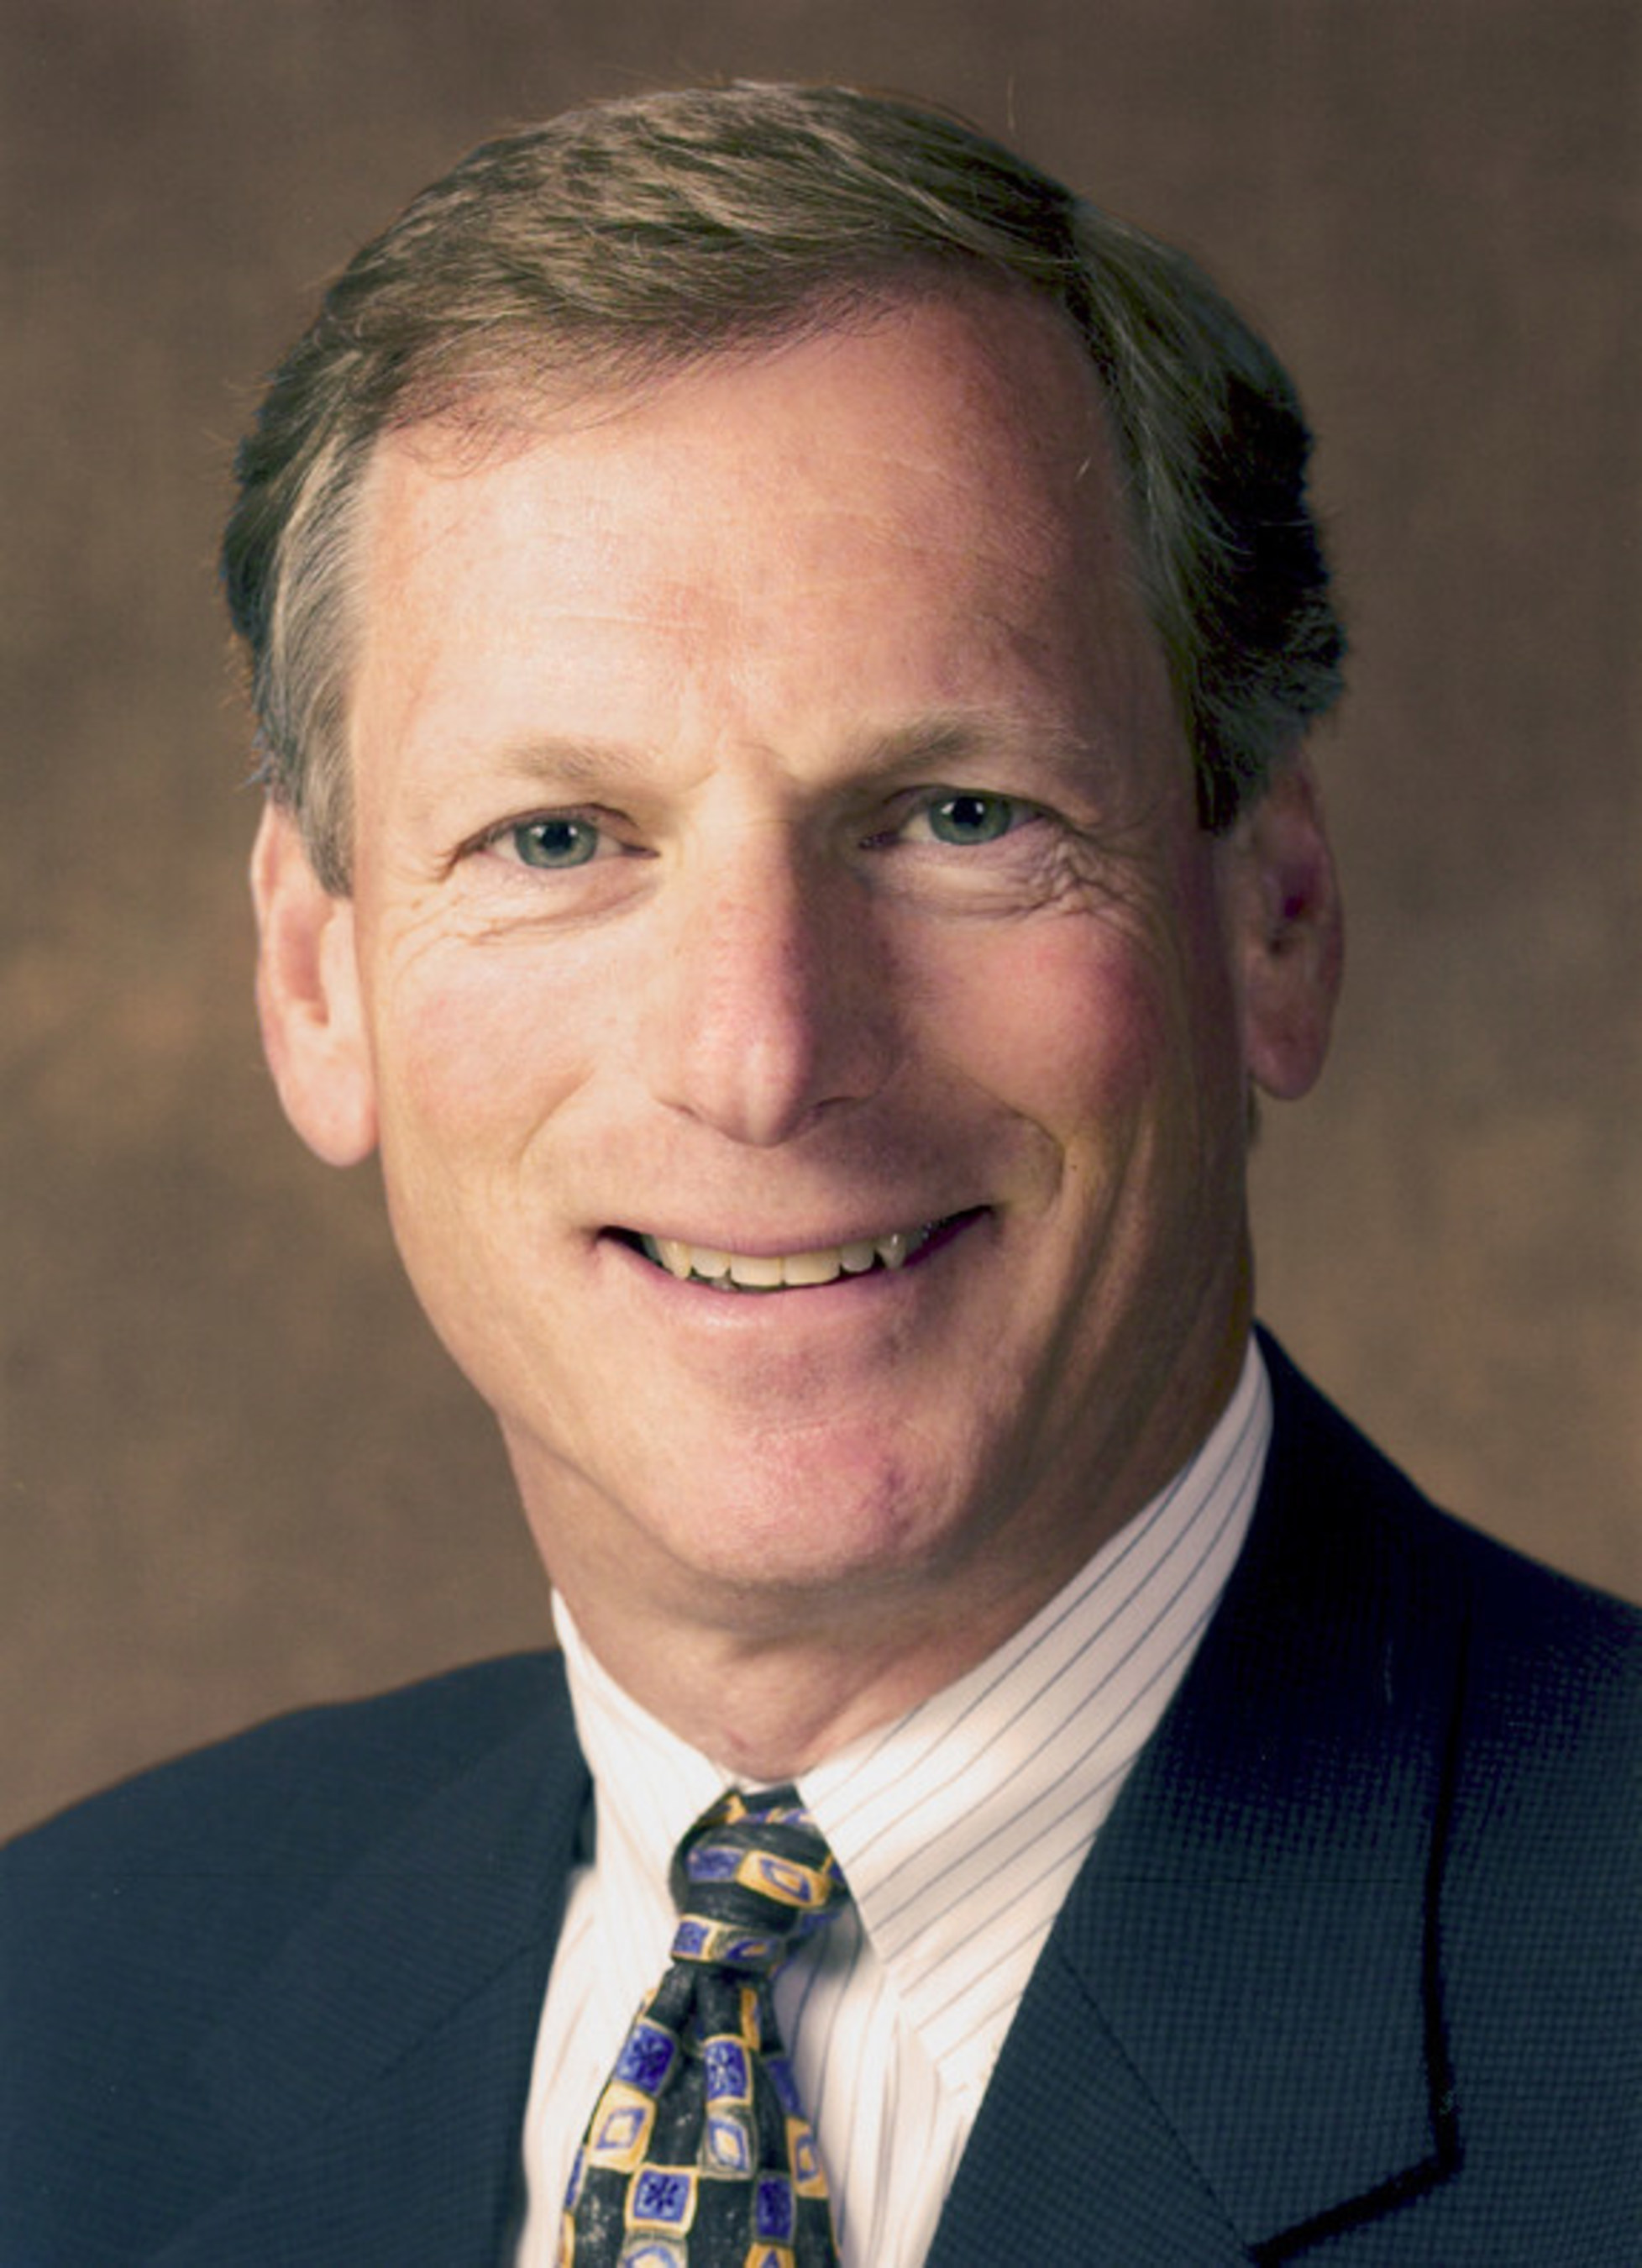 Jeff Lyon, CEO of Kidder Mathews